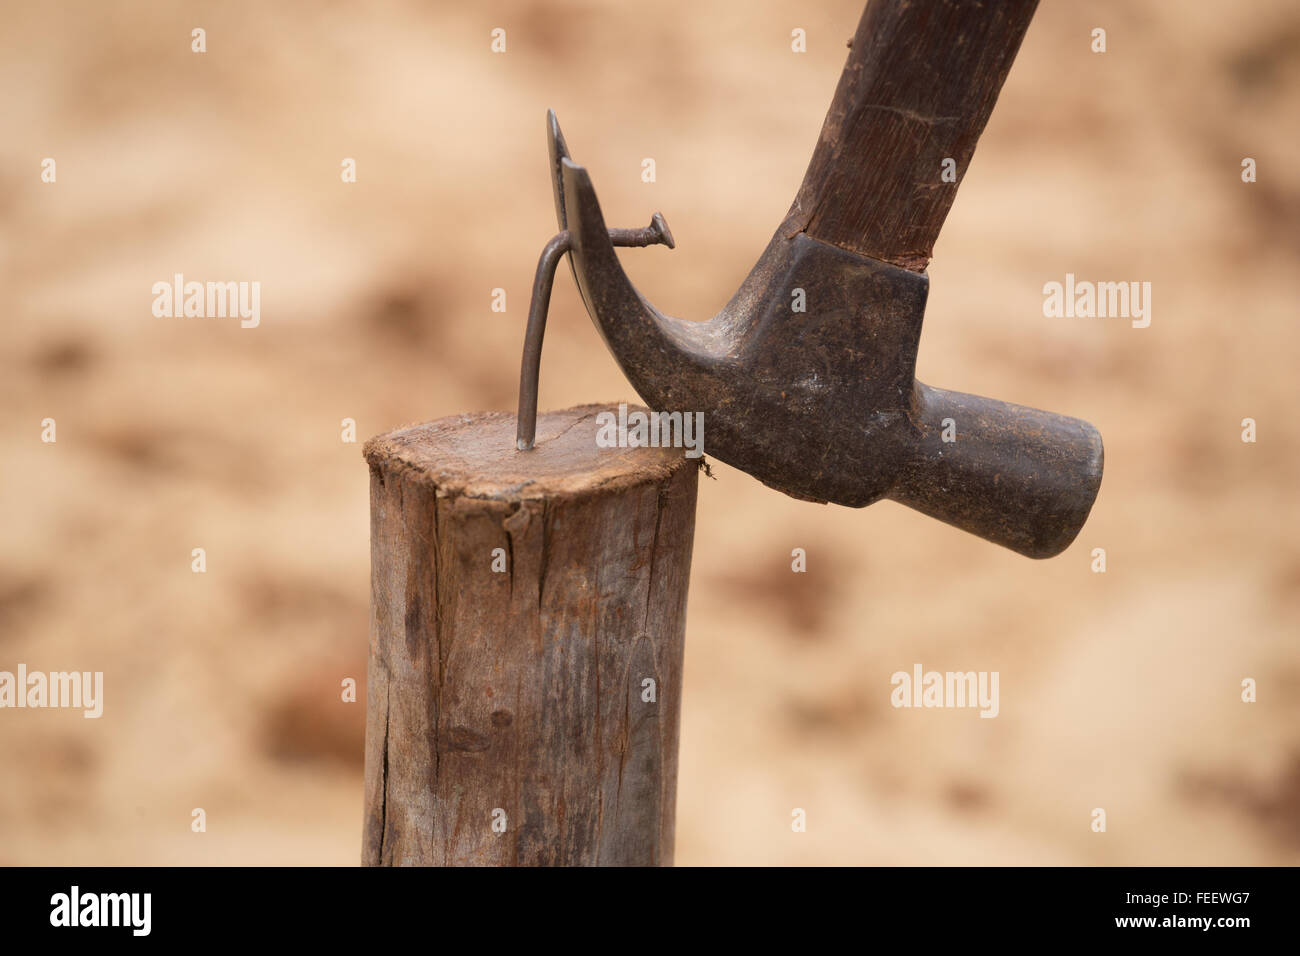 Hammer einen Nagel aus Holz auf Baustelle ziehen Stockfotografie - Alamy